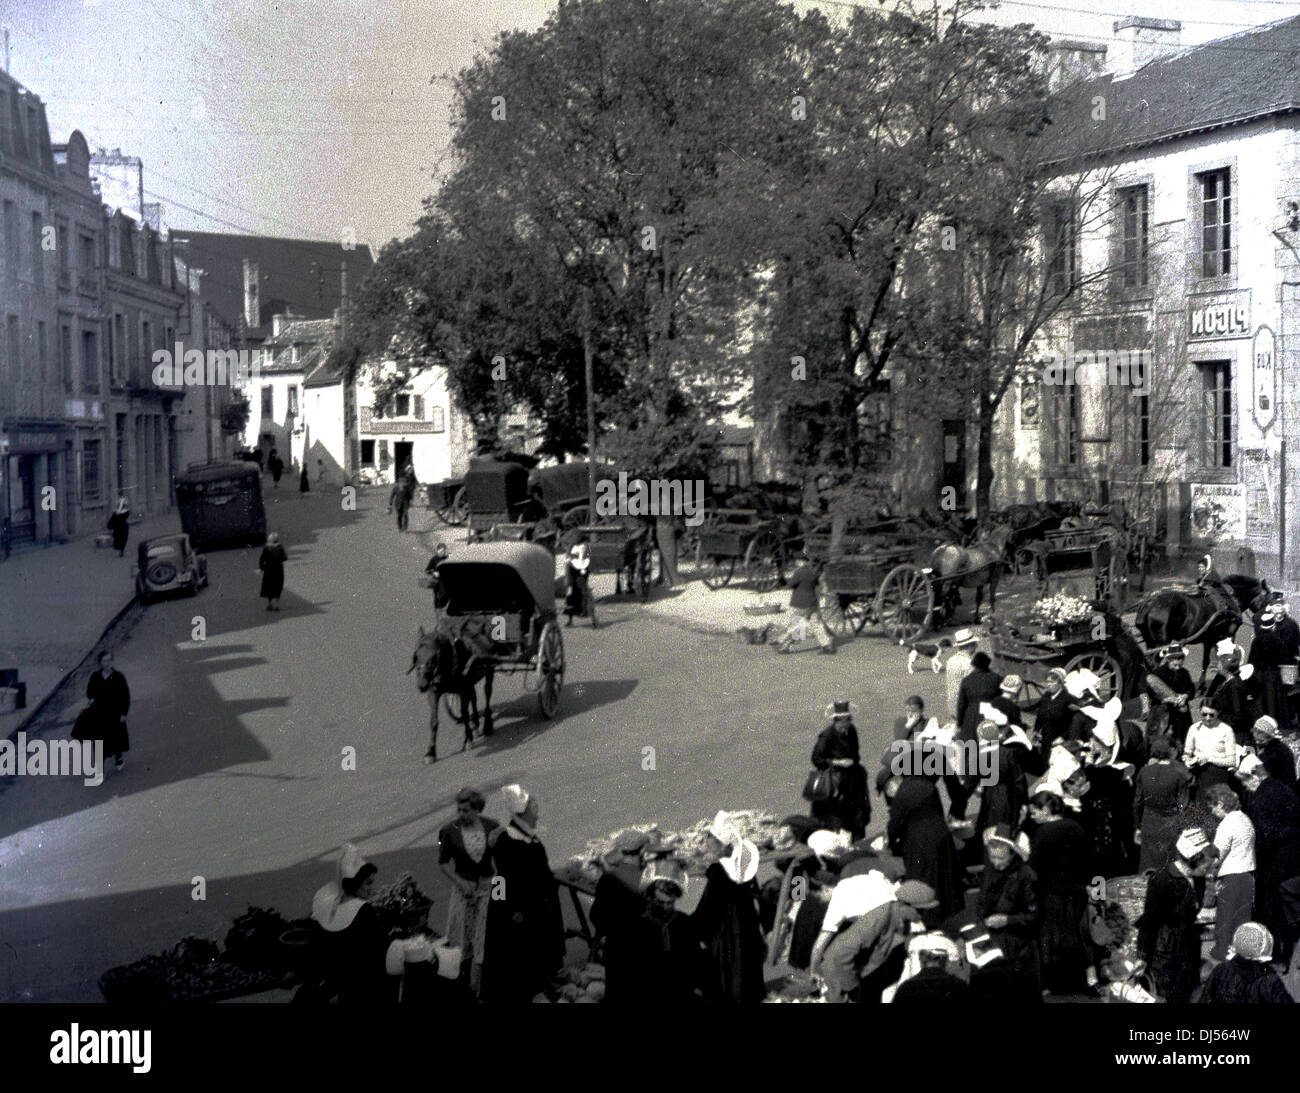 Foto storica del 1930s che mostra una strada a Liegi, Belgio, con la gente del posto che frequenta un mercato di abbigliamento all'aperto. Un cavallo & cart va giù per la strada. Foto Stock